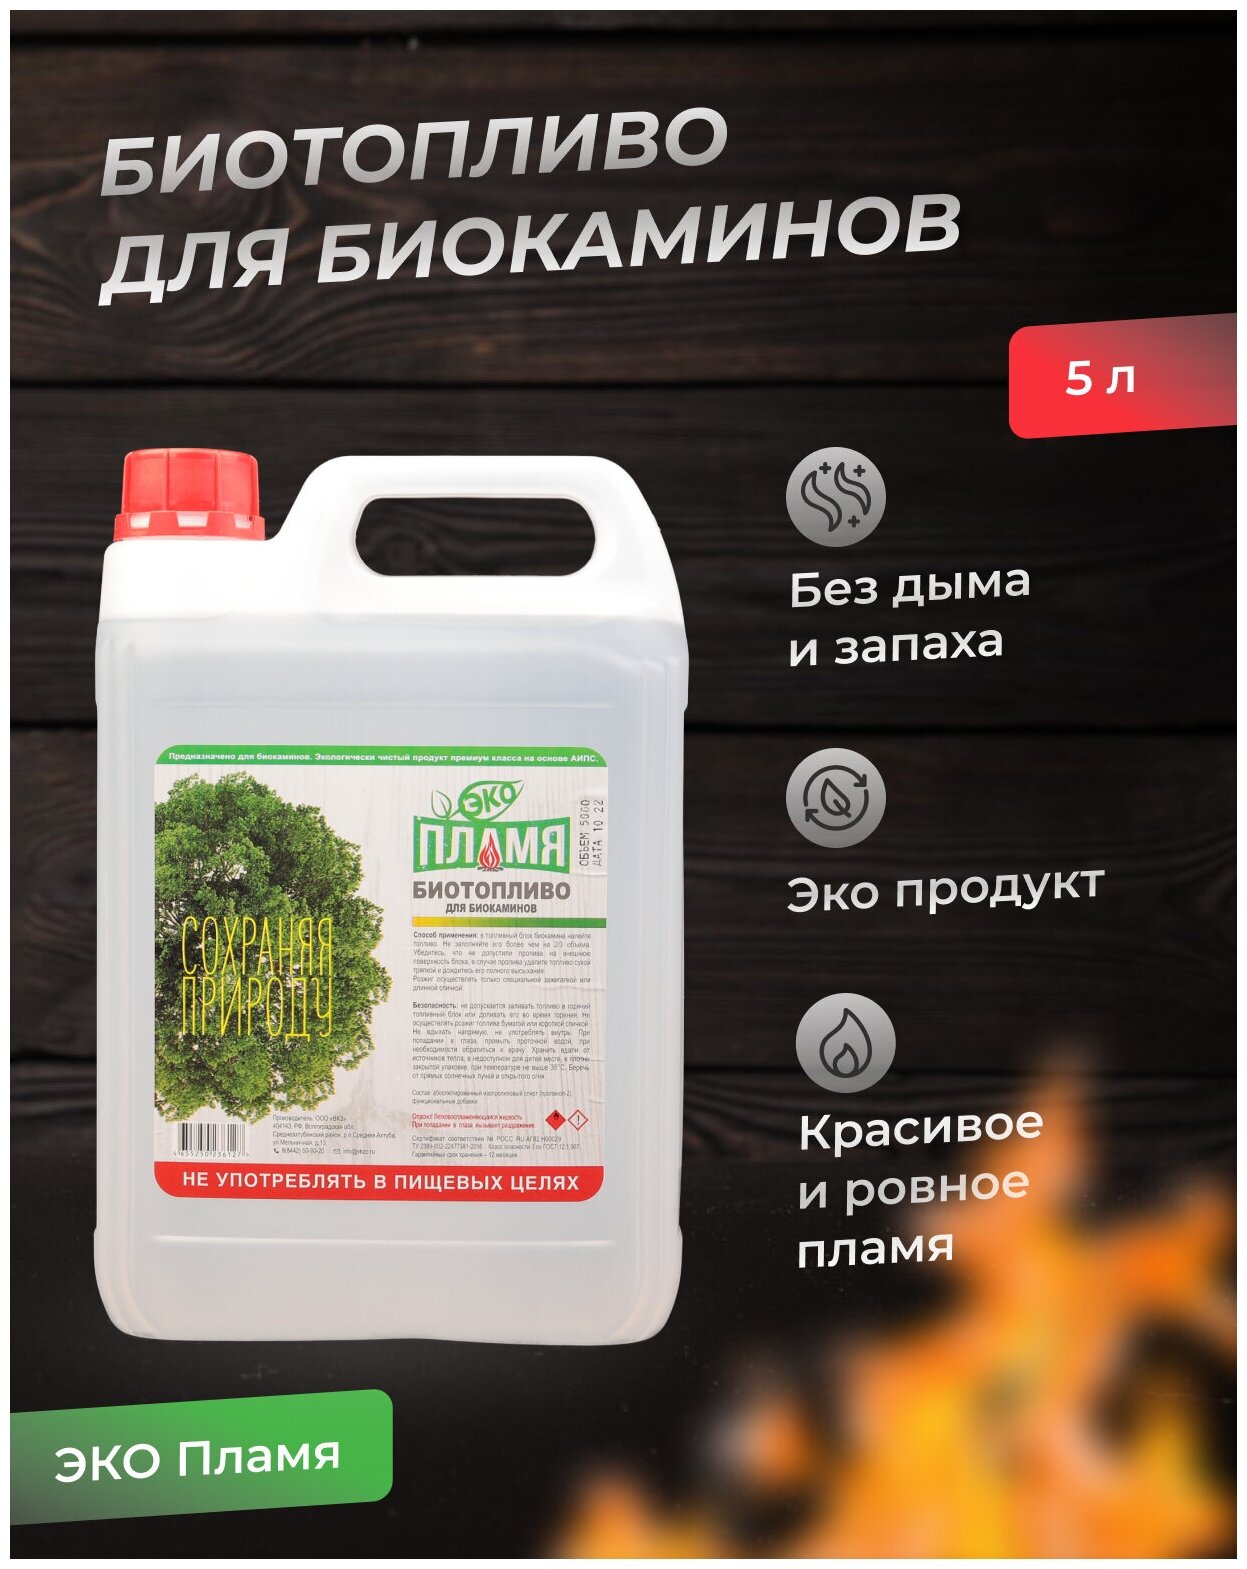 Биотопливо ЭКО Пламя 5 л Премиум класса!